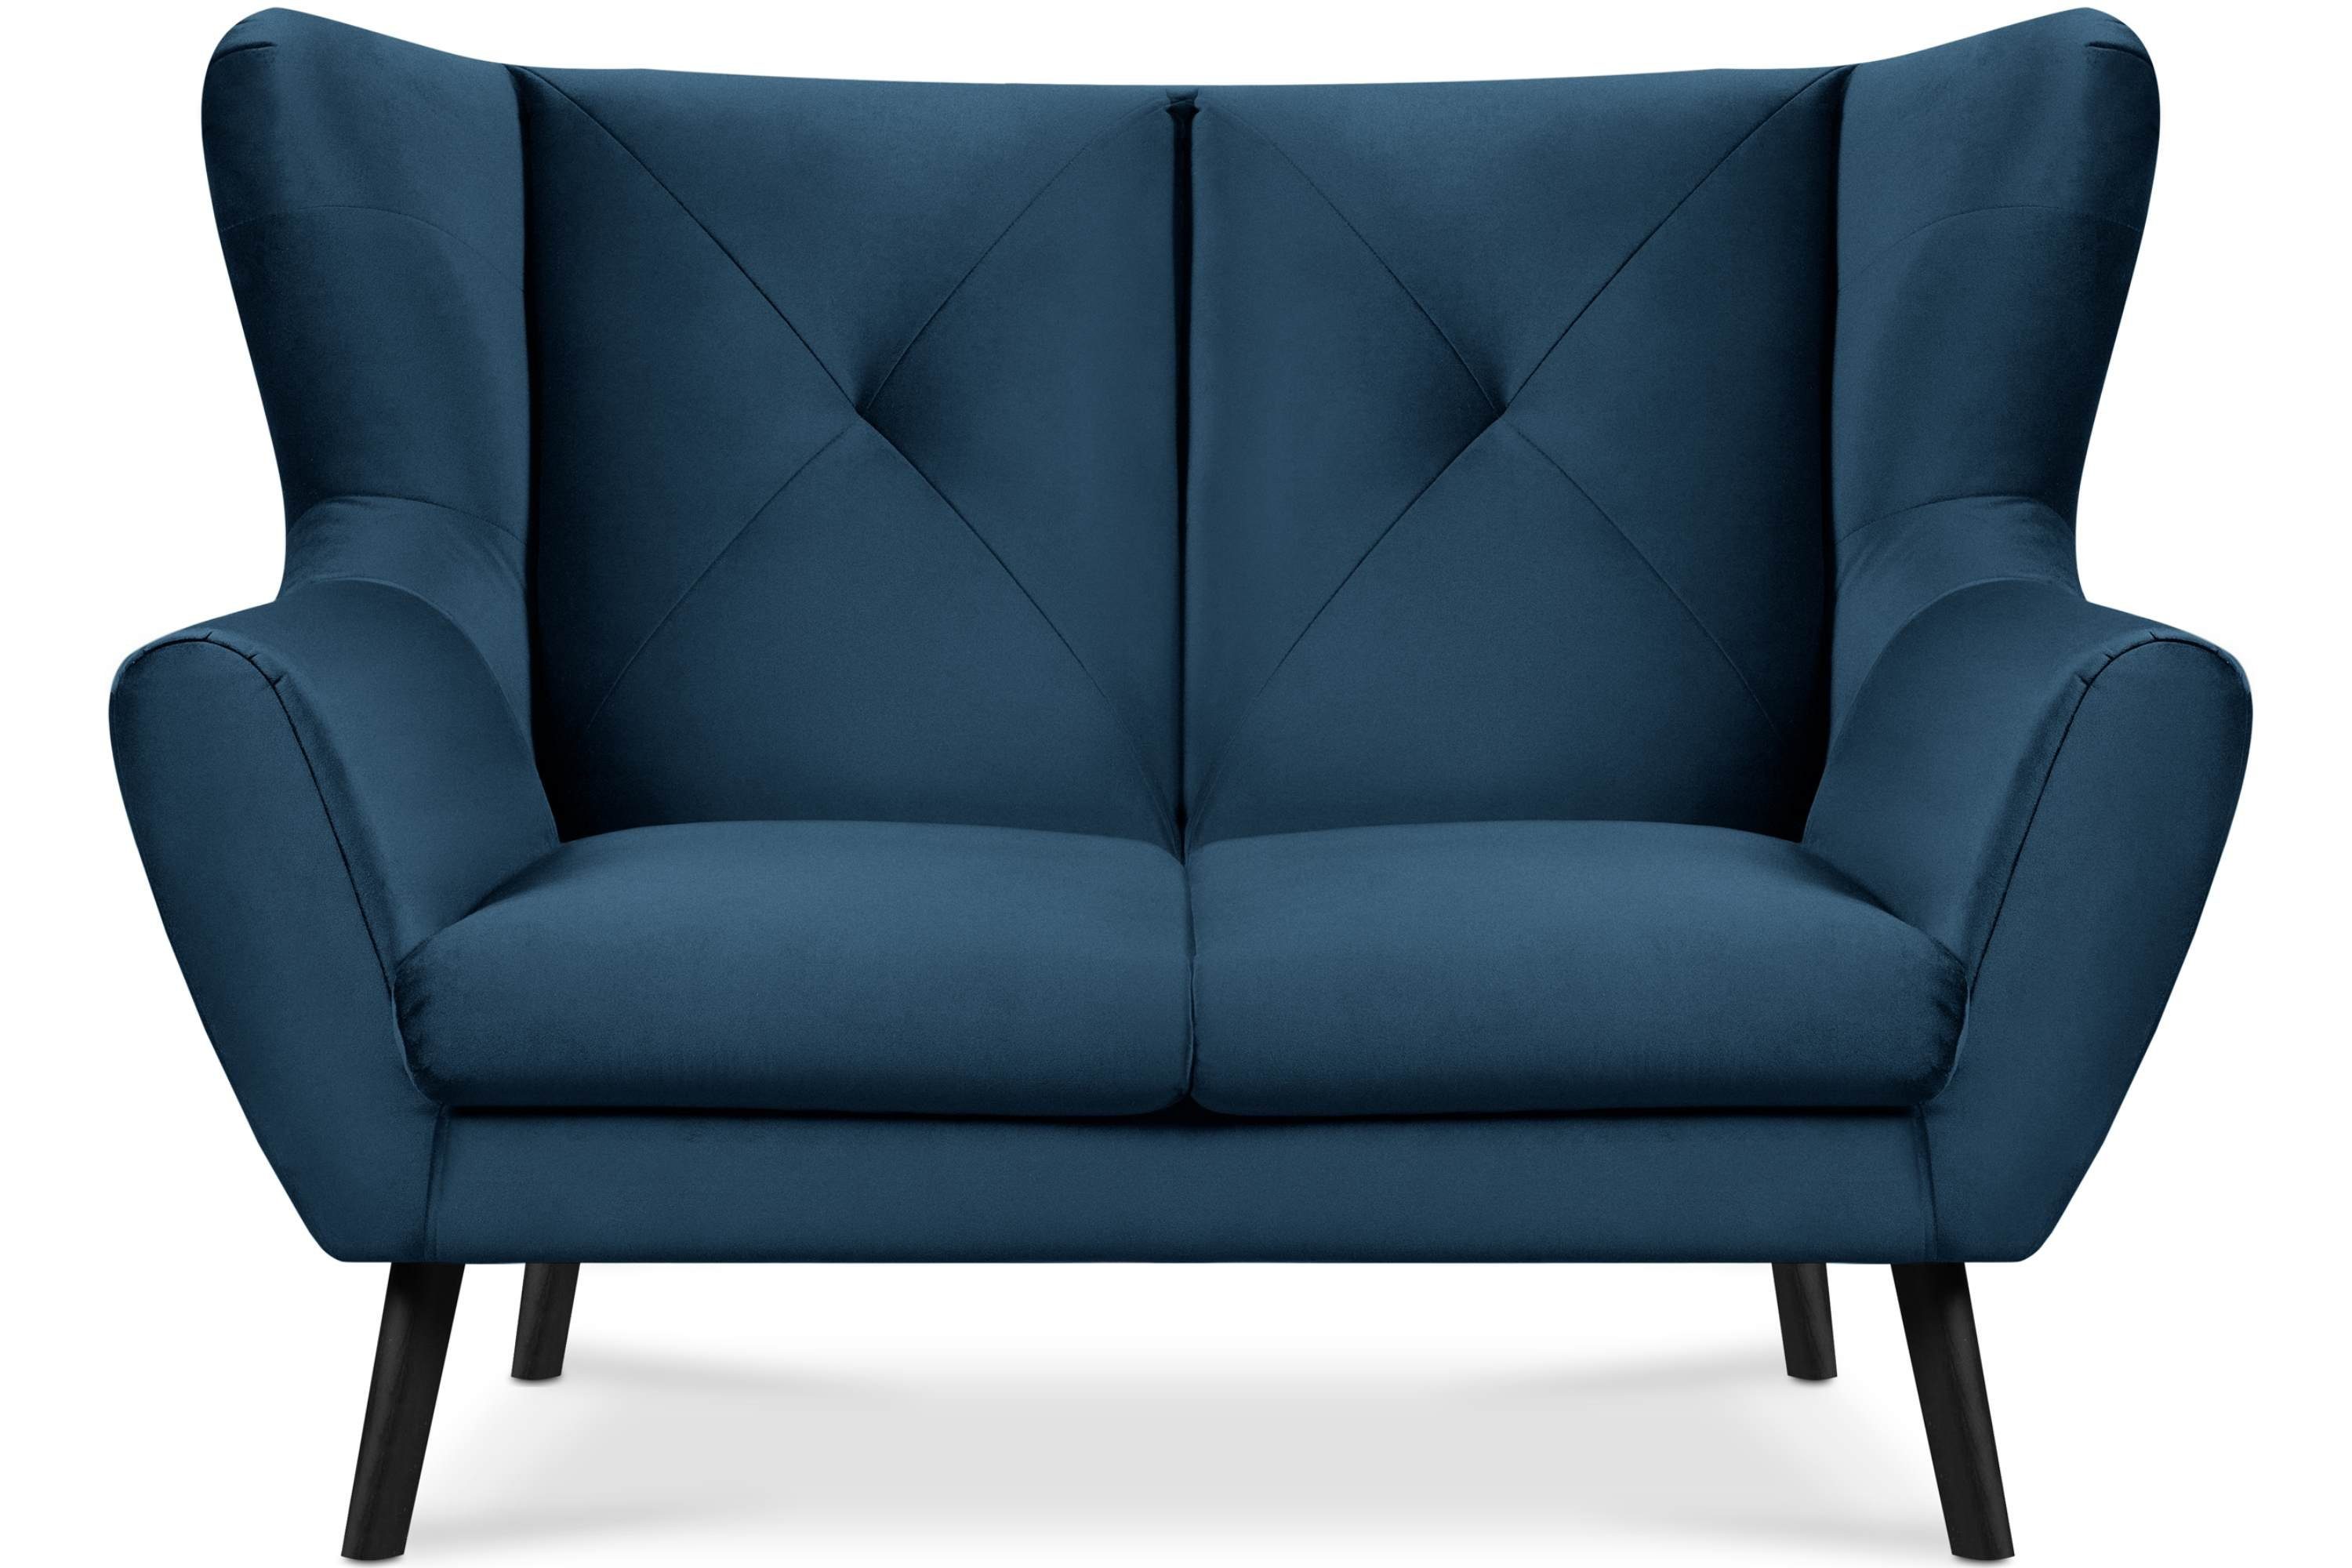 Oberstoff, bequemer Sitz Konsimo im wasserabweisender Sitzer, marineblau MIRO Sofa 2 Sofa Schaumstoff | marineblau